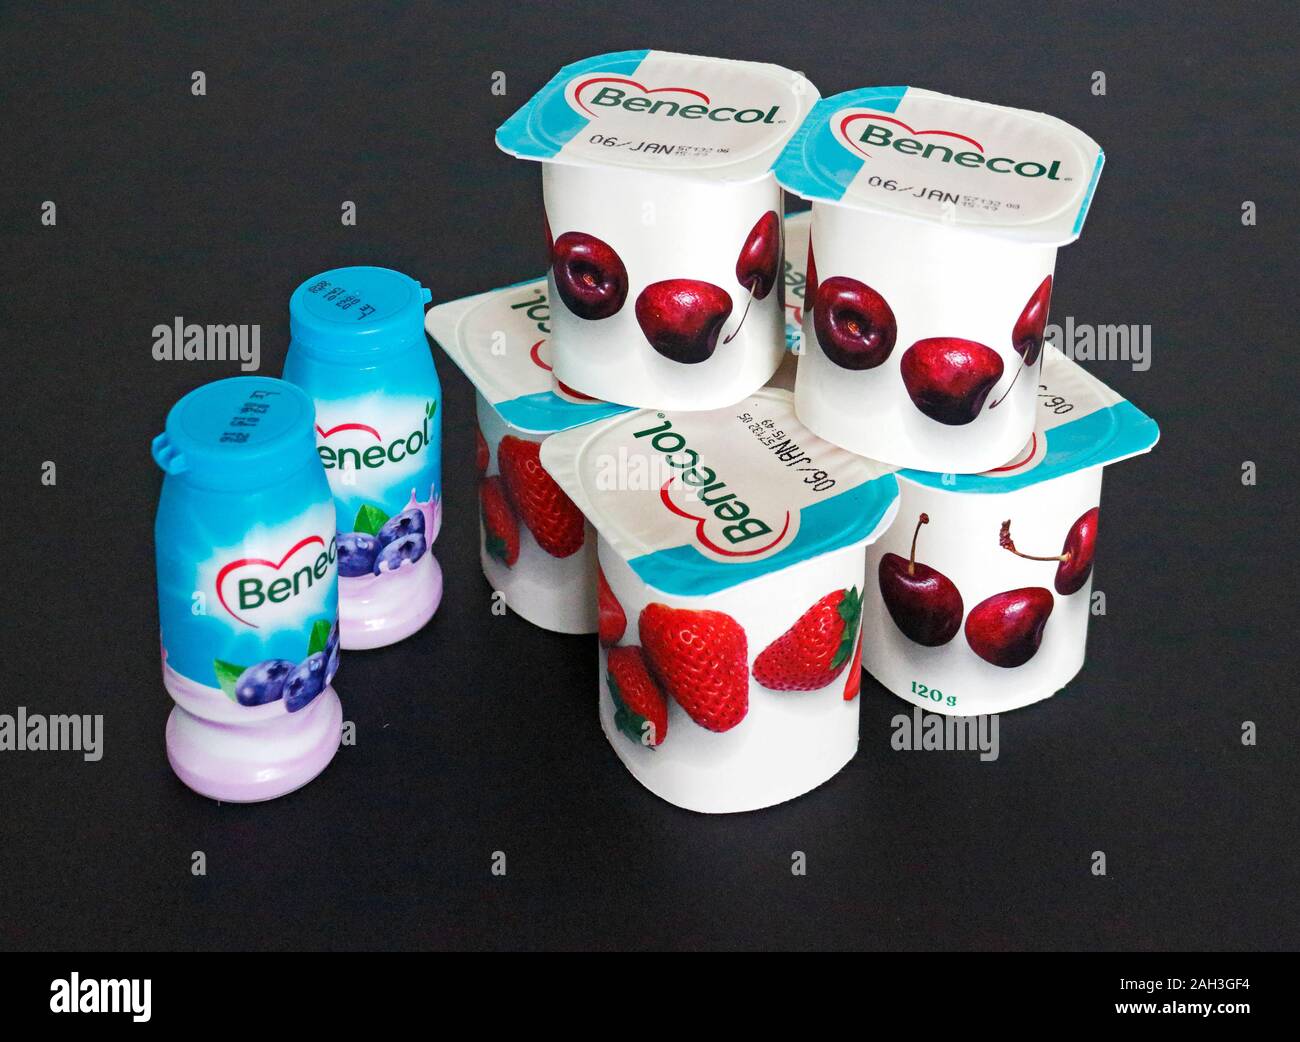 Eine Auswahl von benecol Joghurts und Joghurtdrinks mit pflanzenstanolen Cholesterin senken zu helfen. Stockfoto